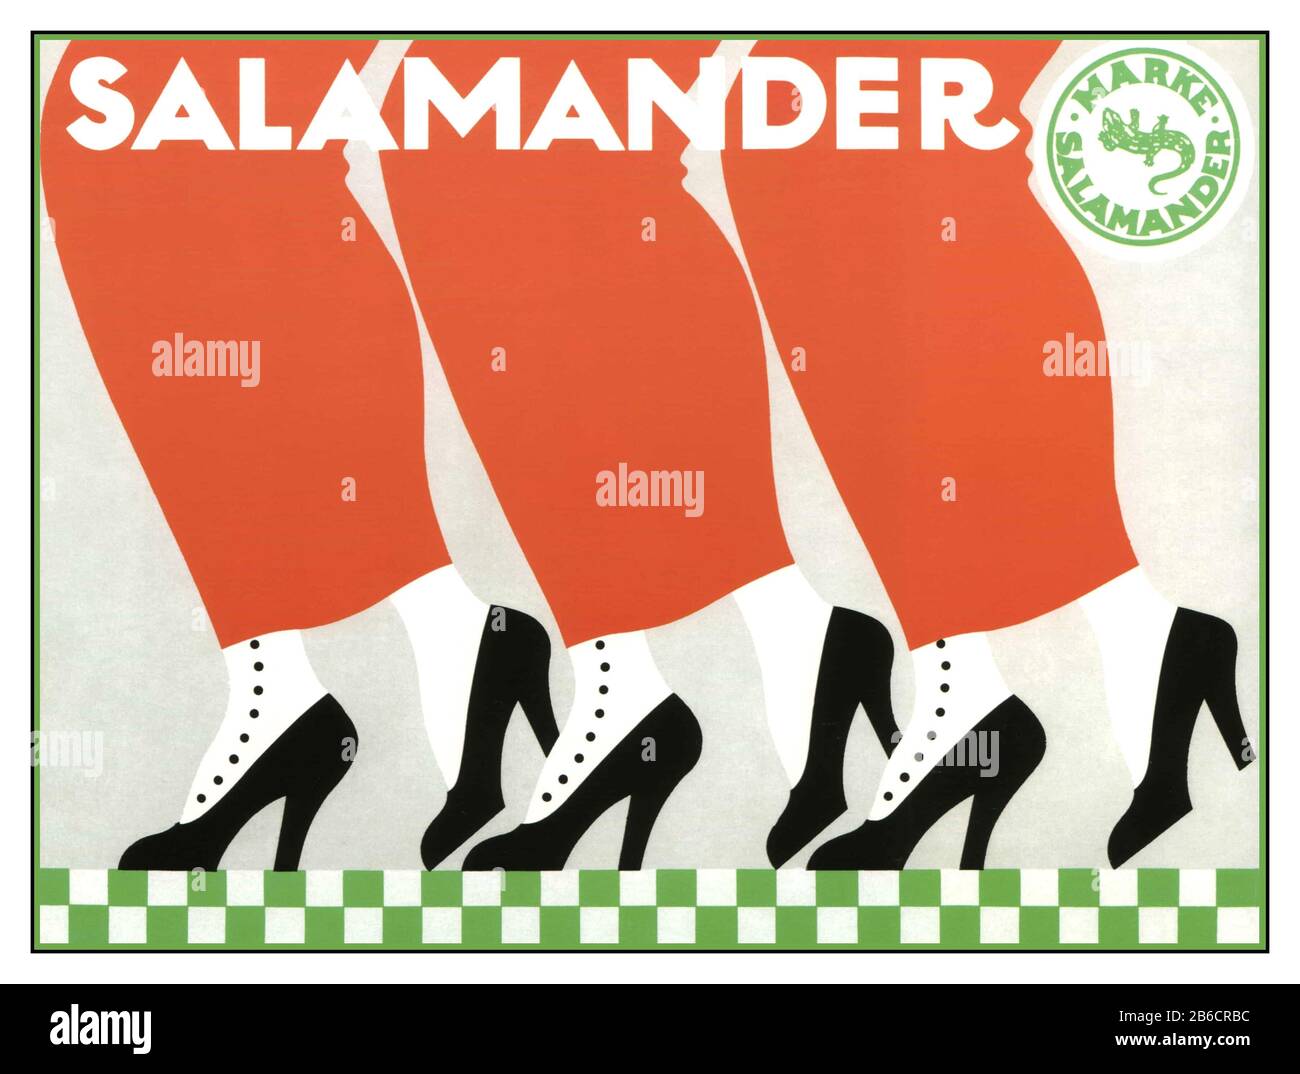 Chaussures De Salamandre Vintage 1912 Affiche Allemande Publicité Salamandre Shoes.'Arke Salamander' Art Déco Design Vintage Salamandre Mode Publicité Affiche Marke Salamander Shoes By Ernst Deutsch Dryden, Salamander Shoes, 1912 (Salamander-Schuhe, 1912) Banque D'Images